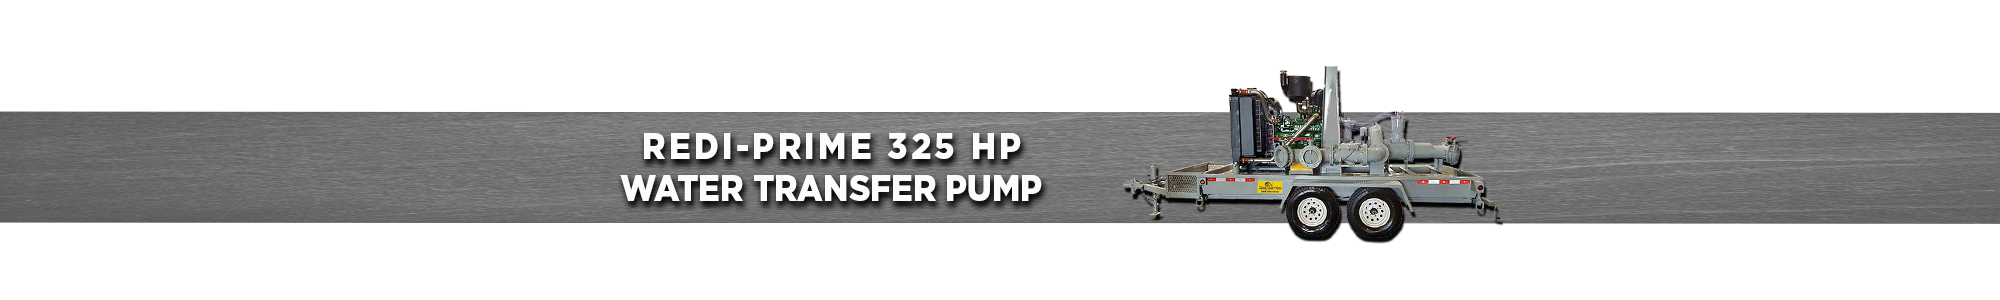 Redi-Prime 325 HP water transfer pump